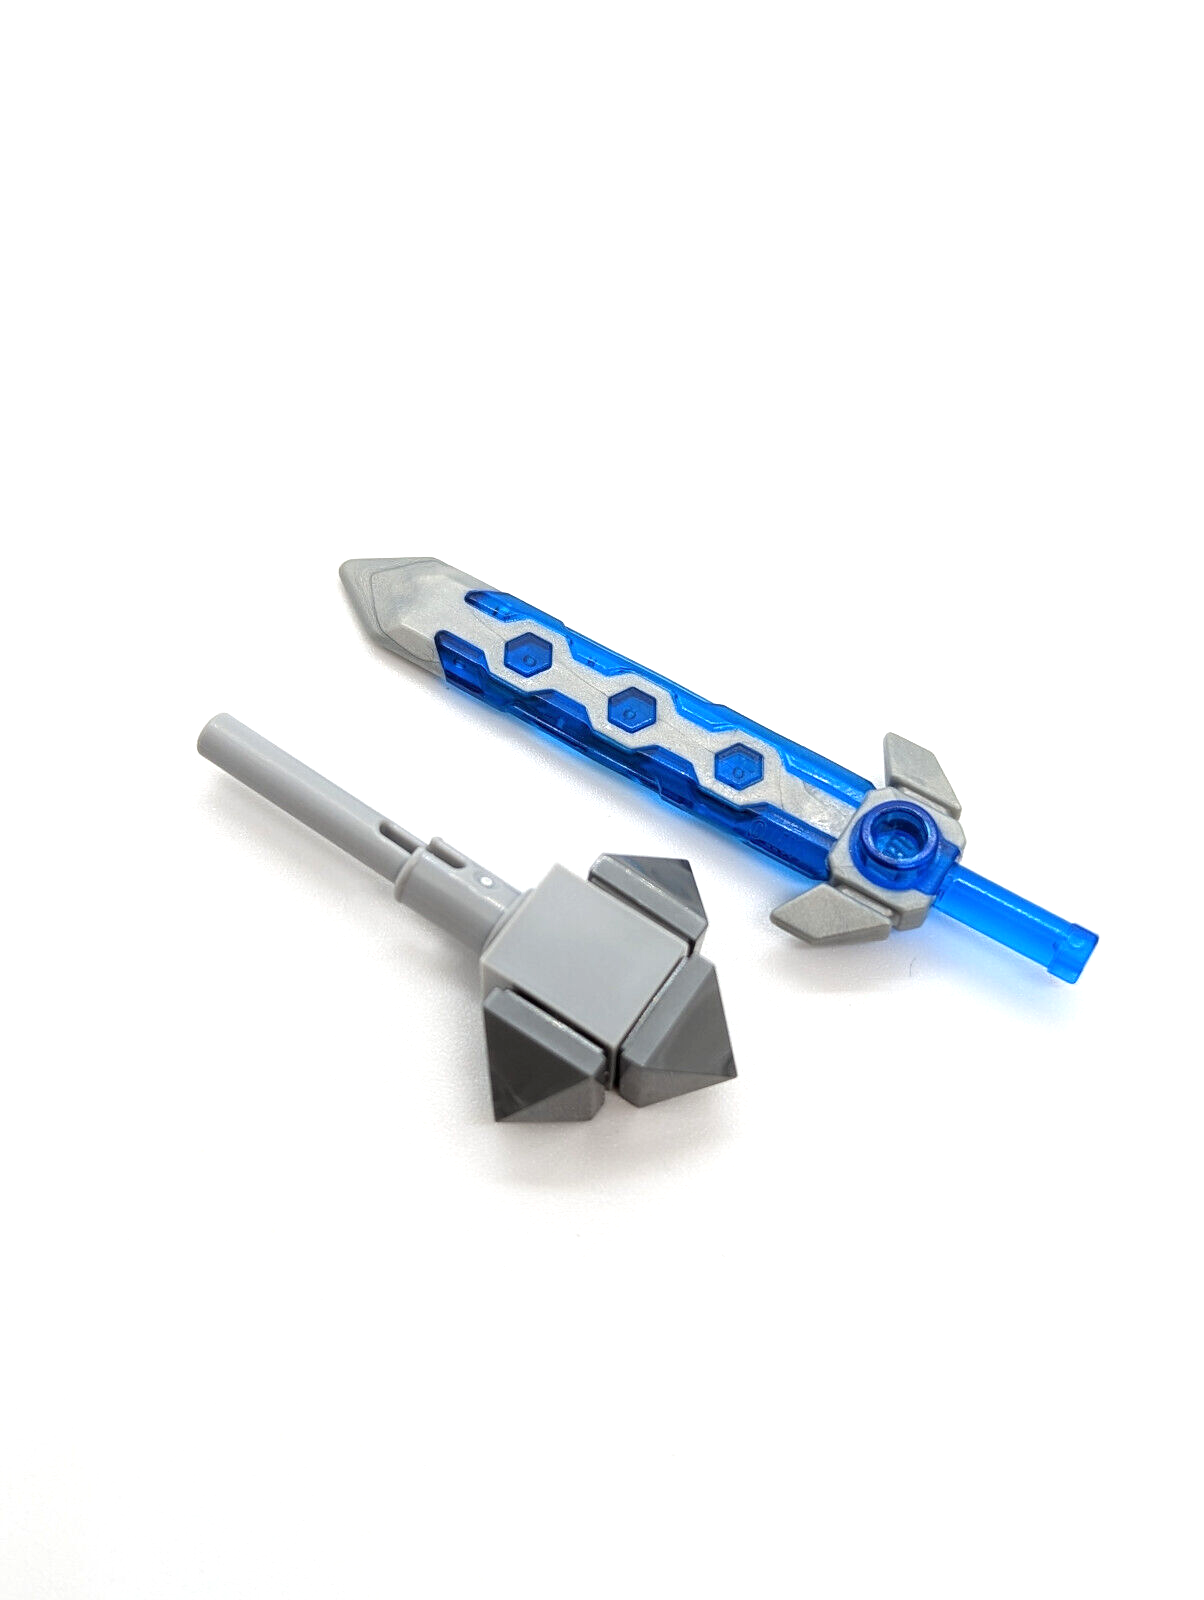 LEGO Nexo Knights Minifigure - Queen Halbert (nex066) 70349 Sword